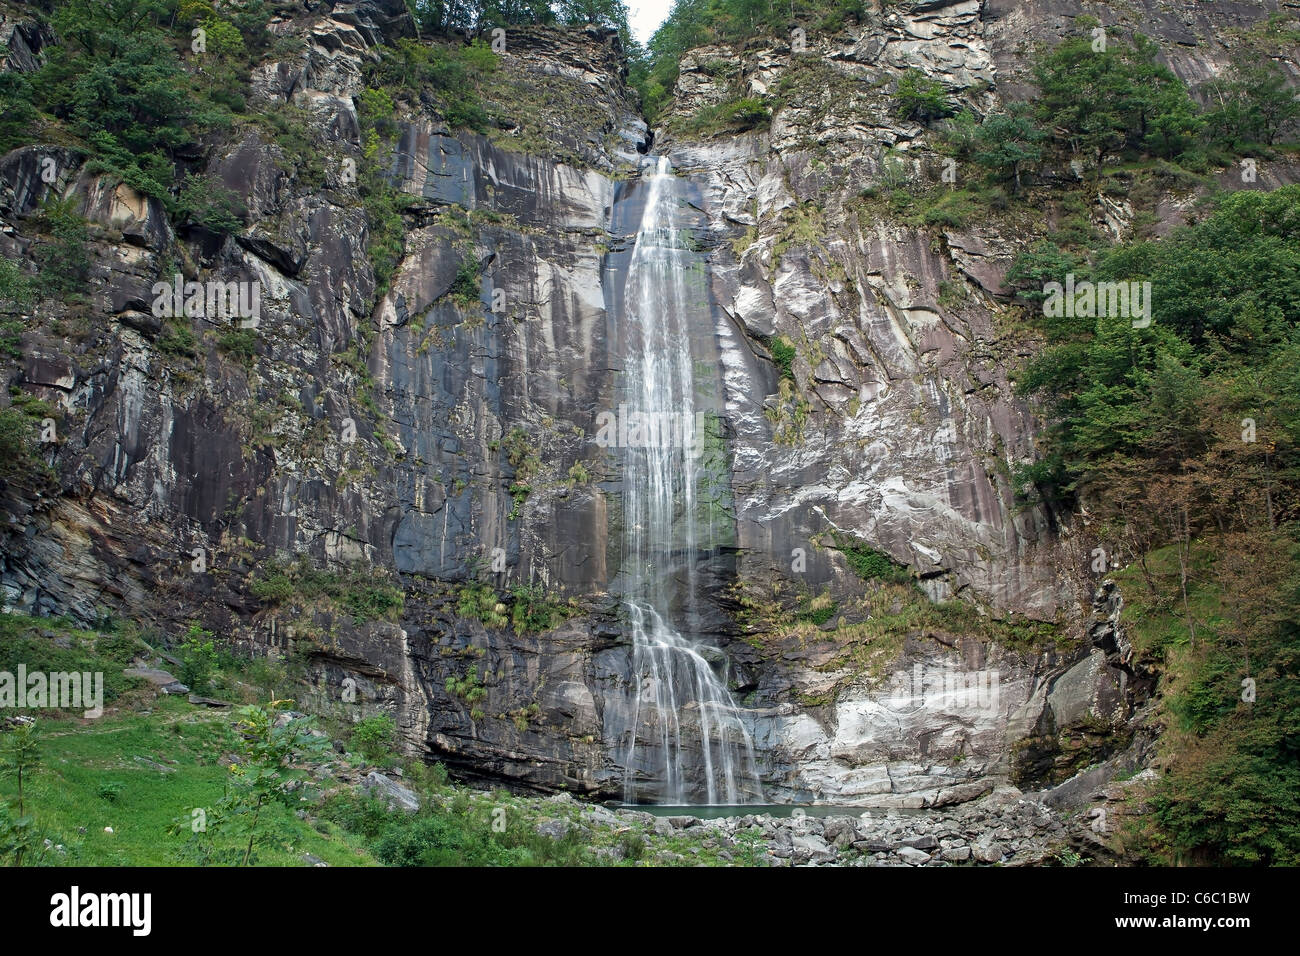 Waterfall of Bignasco Stock Photo